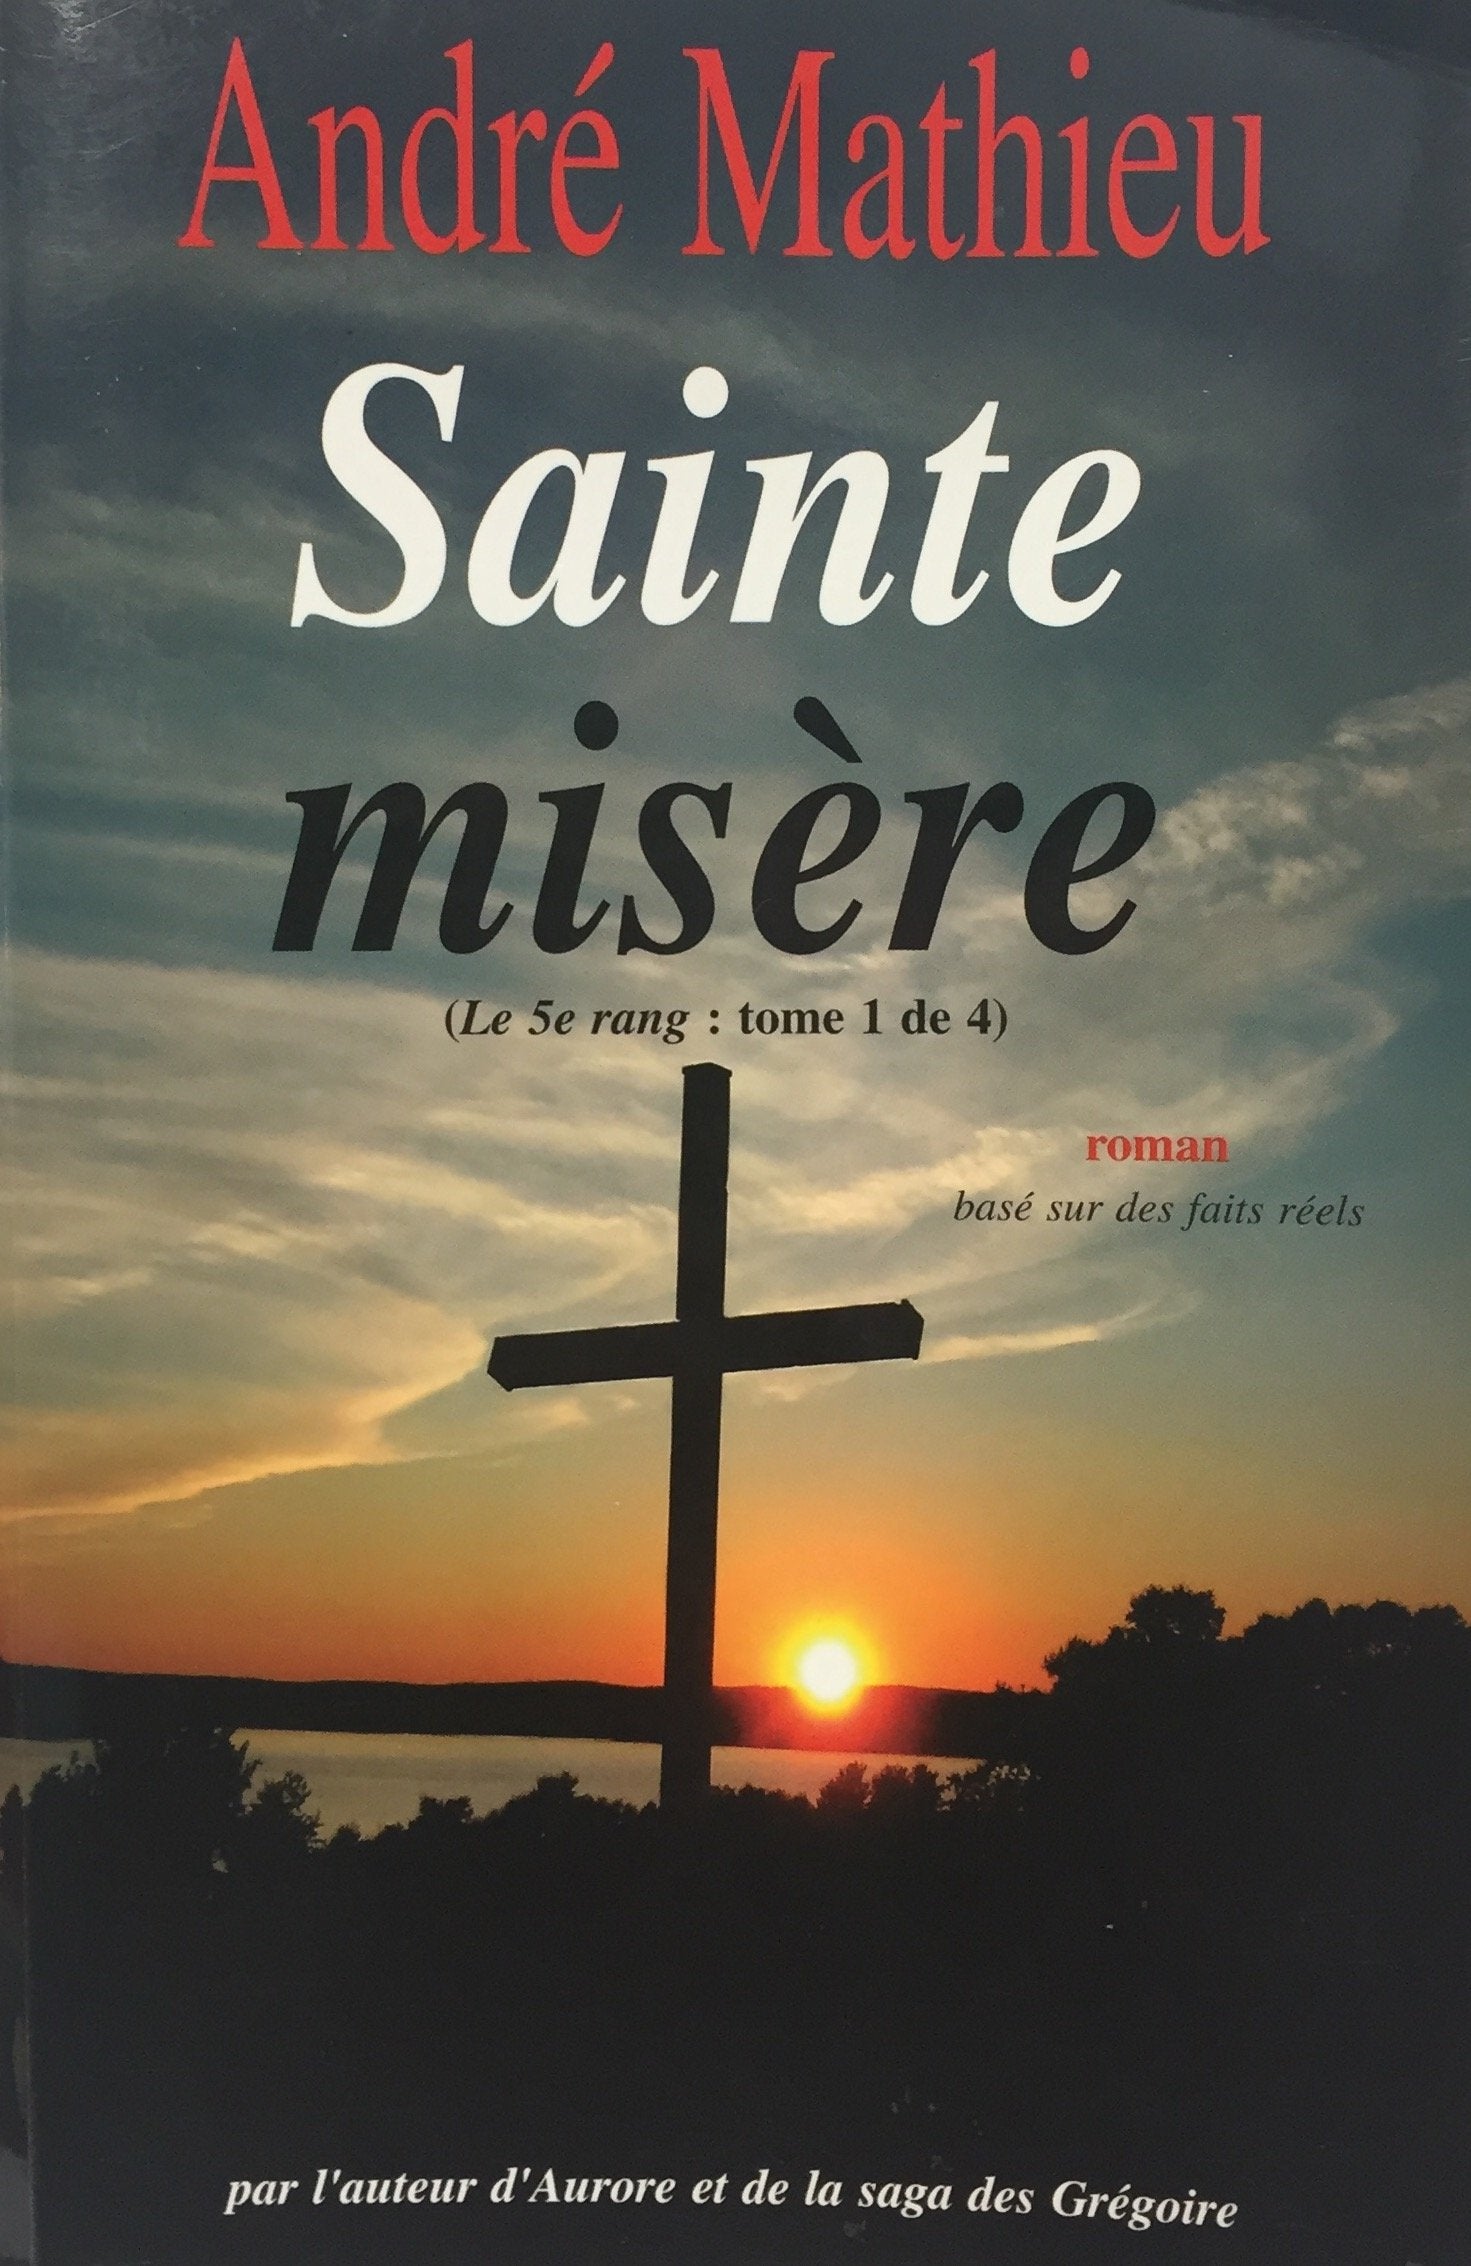 Livre ISBN 292251241X Le 5e rang # 1 : Sainte misère (André Mathieu)